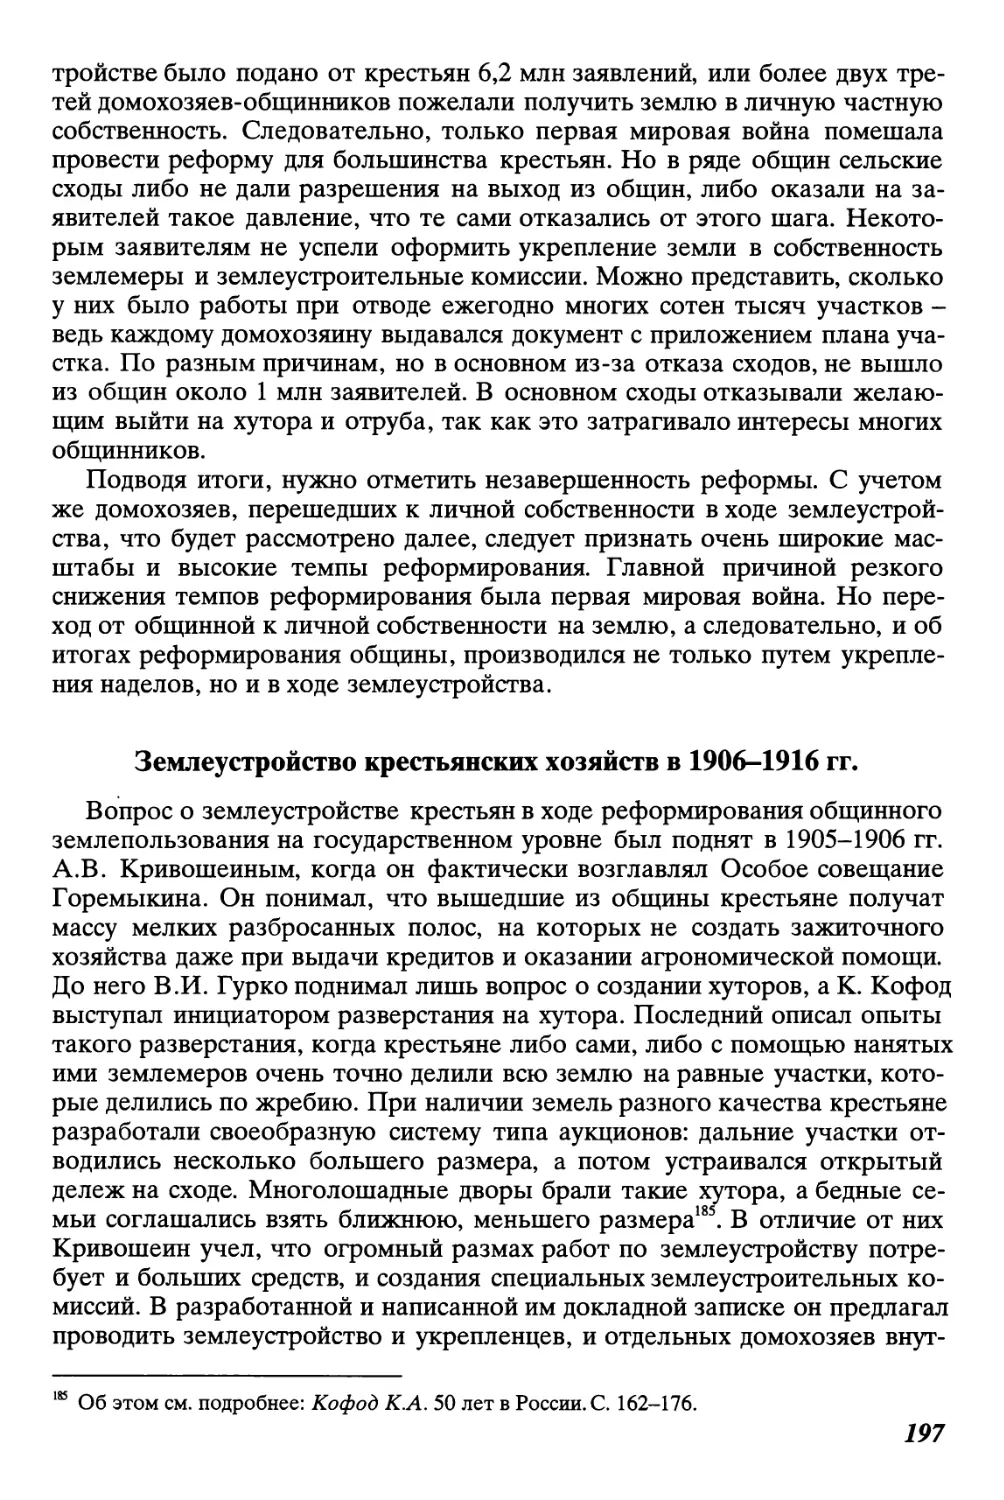 Землеустройство крестьянских хозяйств в 1906-1916 гг.